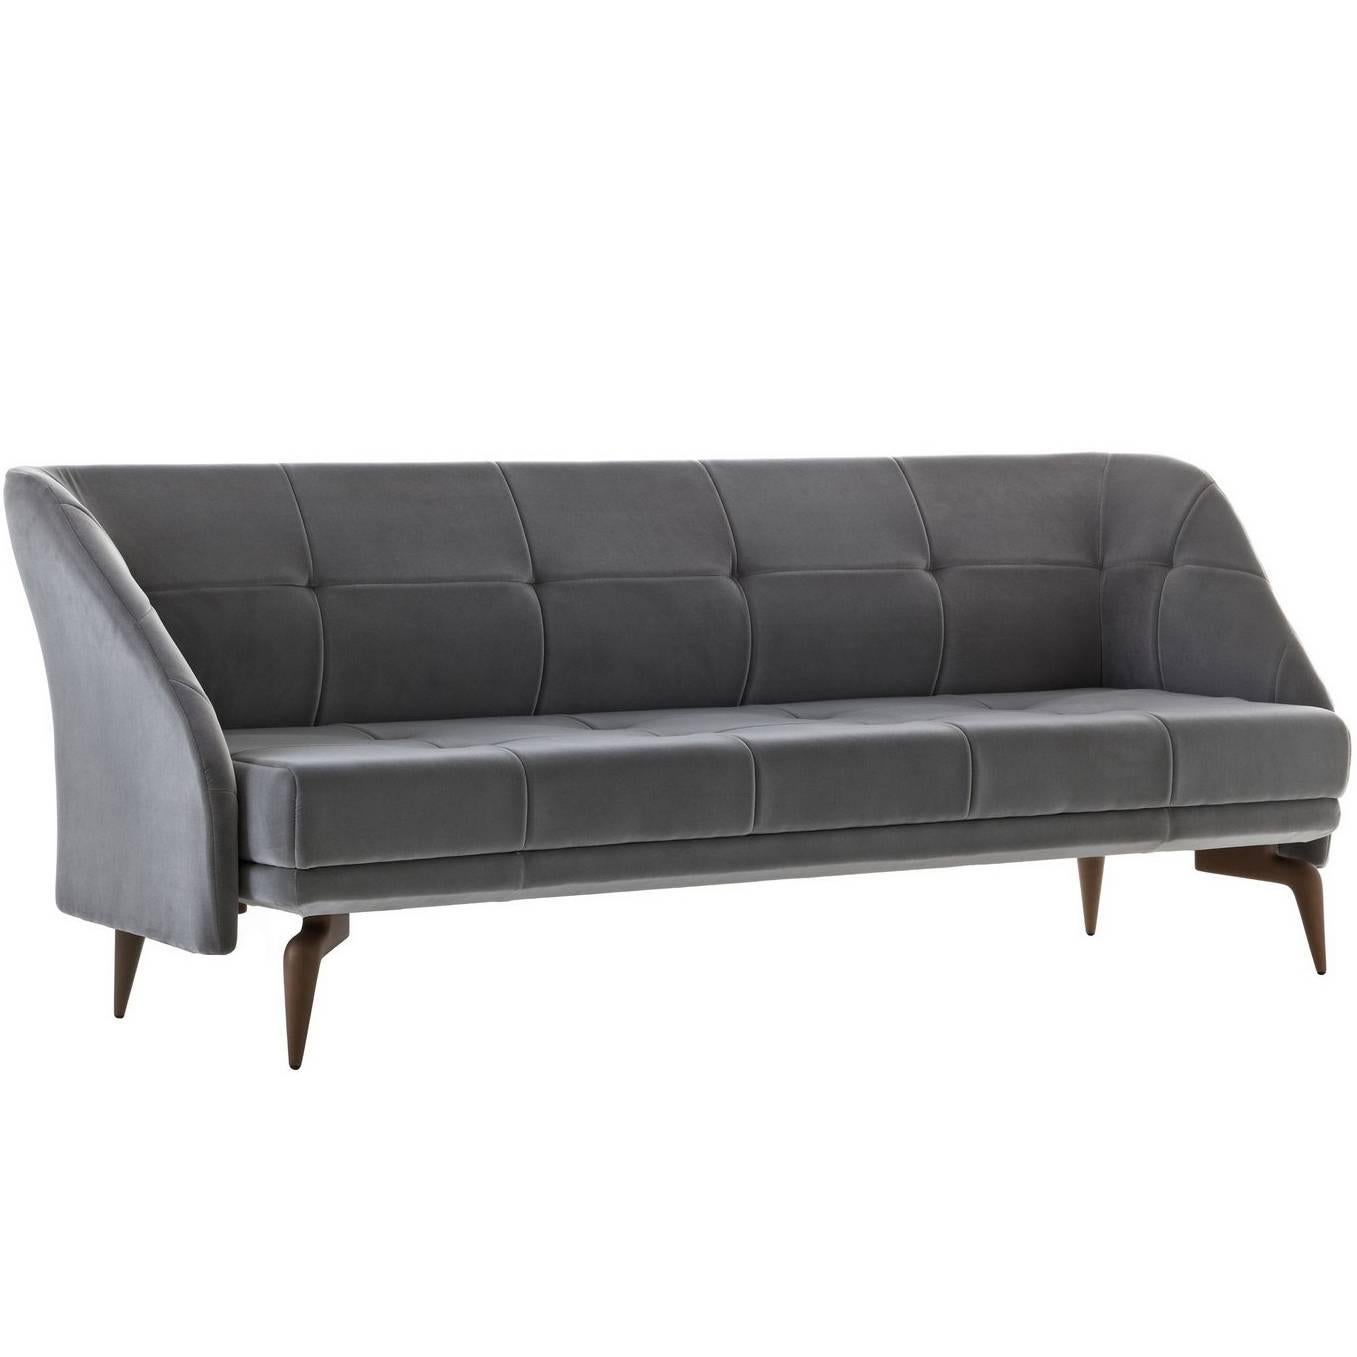 Dreisitziges Sofa „Leeon“ mit Samtbezug entworfen von L. und R. Palomba für Driade